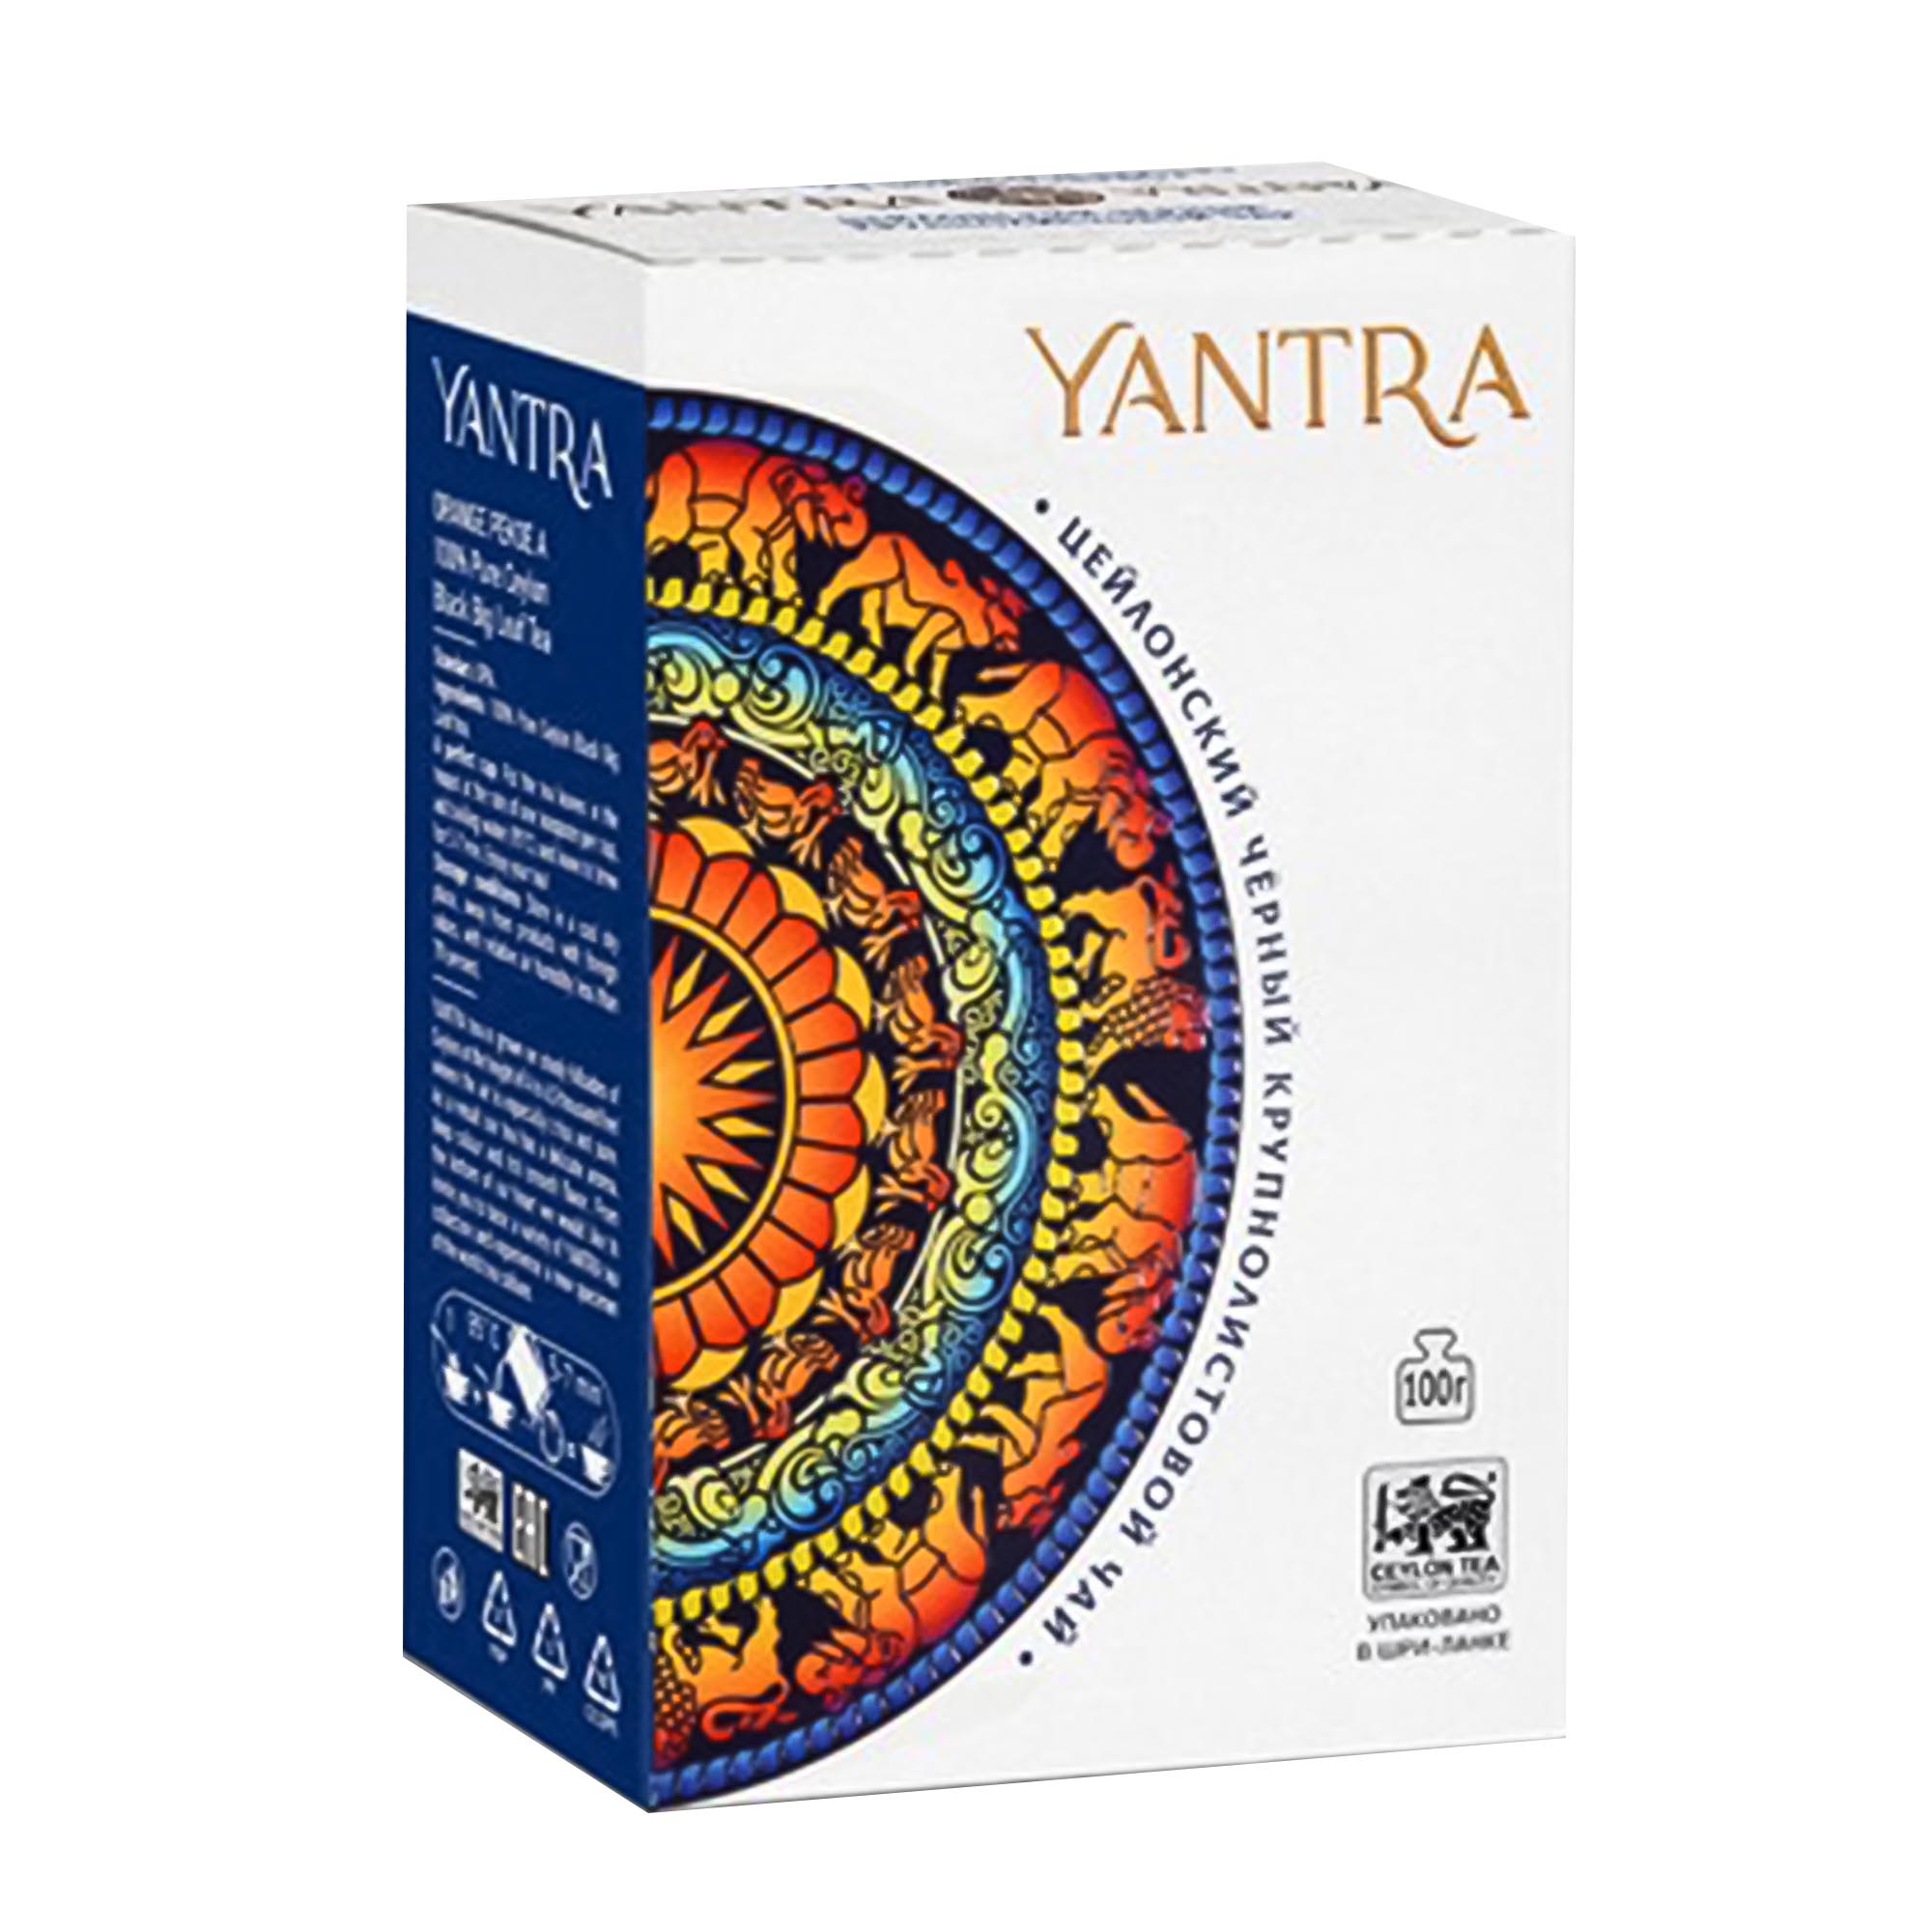 Чай черный крупнолистовой Yantra ОРА 100 г чай среднелистовой yantra flowery broken orange pekoe 100 г